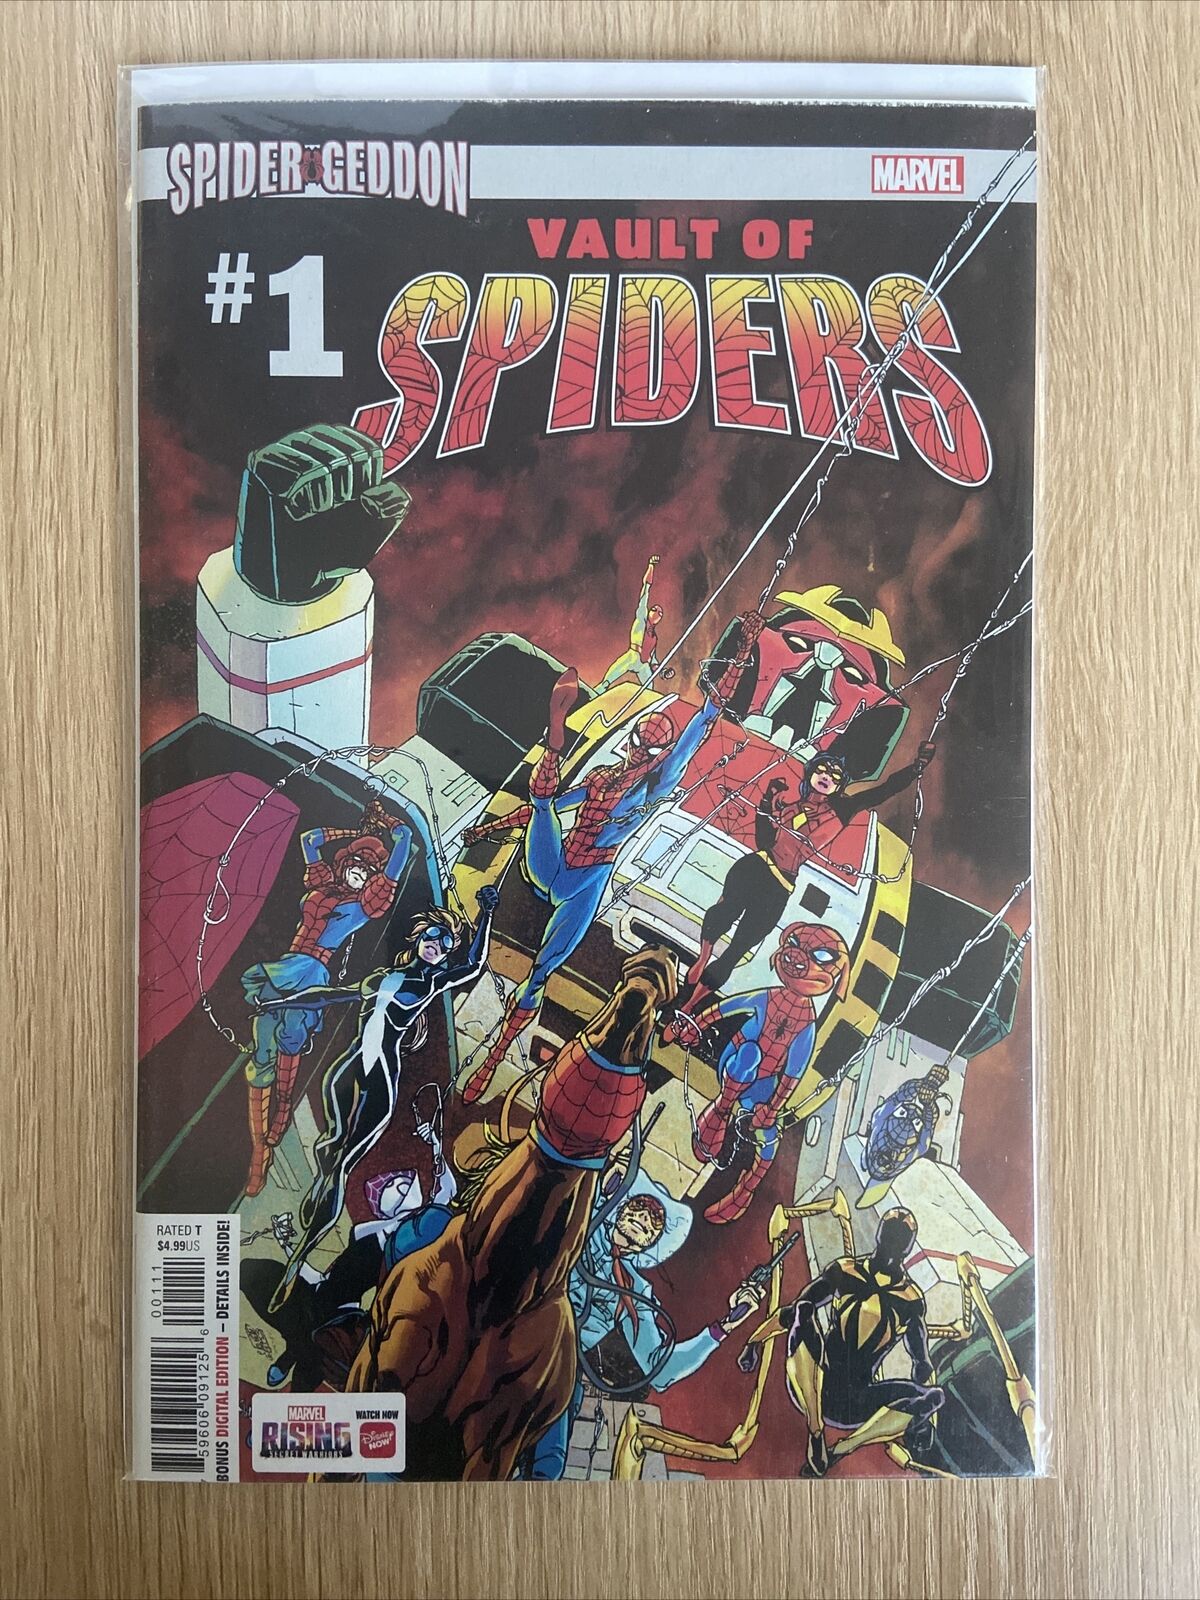 SPIDER-GEDDON VAULT OF SPIDERS #1 1ST PRINT MARVEL COMICS(2018) SAVAGE SPIDERMAN